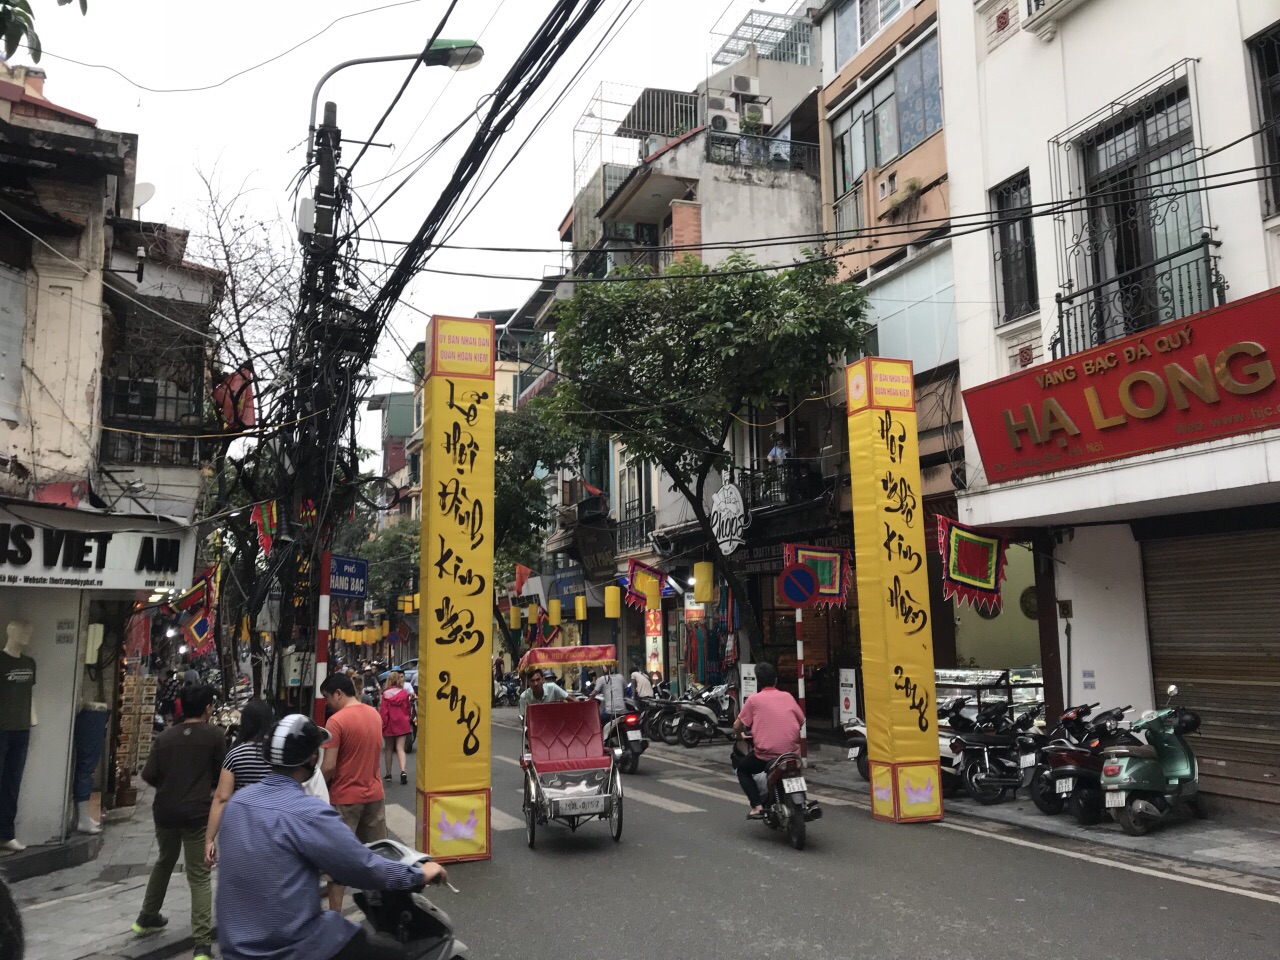 河内老城区是极具越南特色的市民生活娱乐区域,还剑湖,三十六行街及